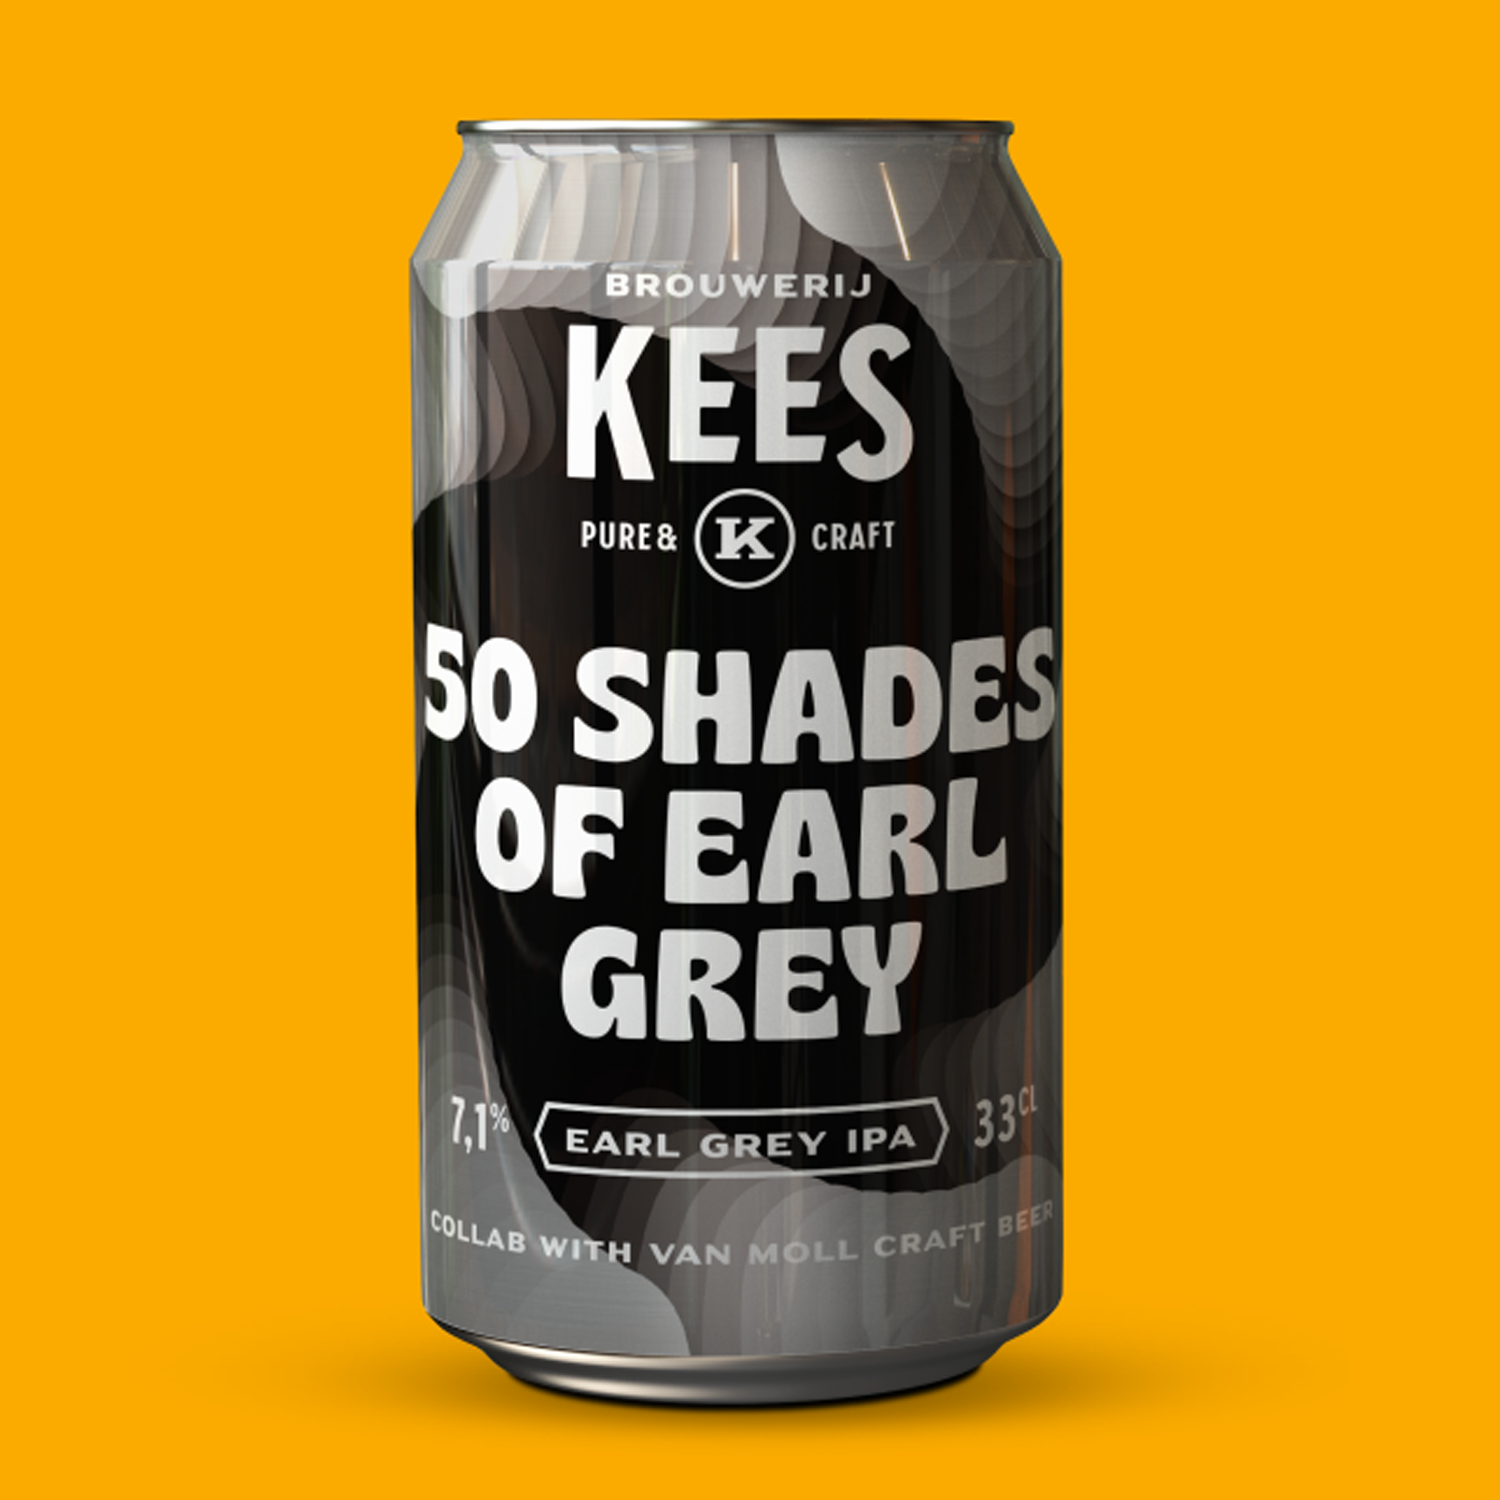 Kees 50 Shades Of Earl Grey IPA